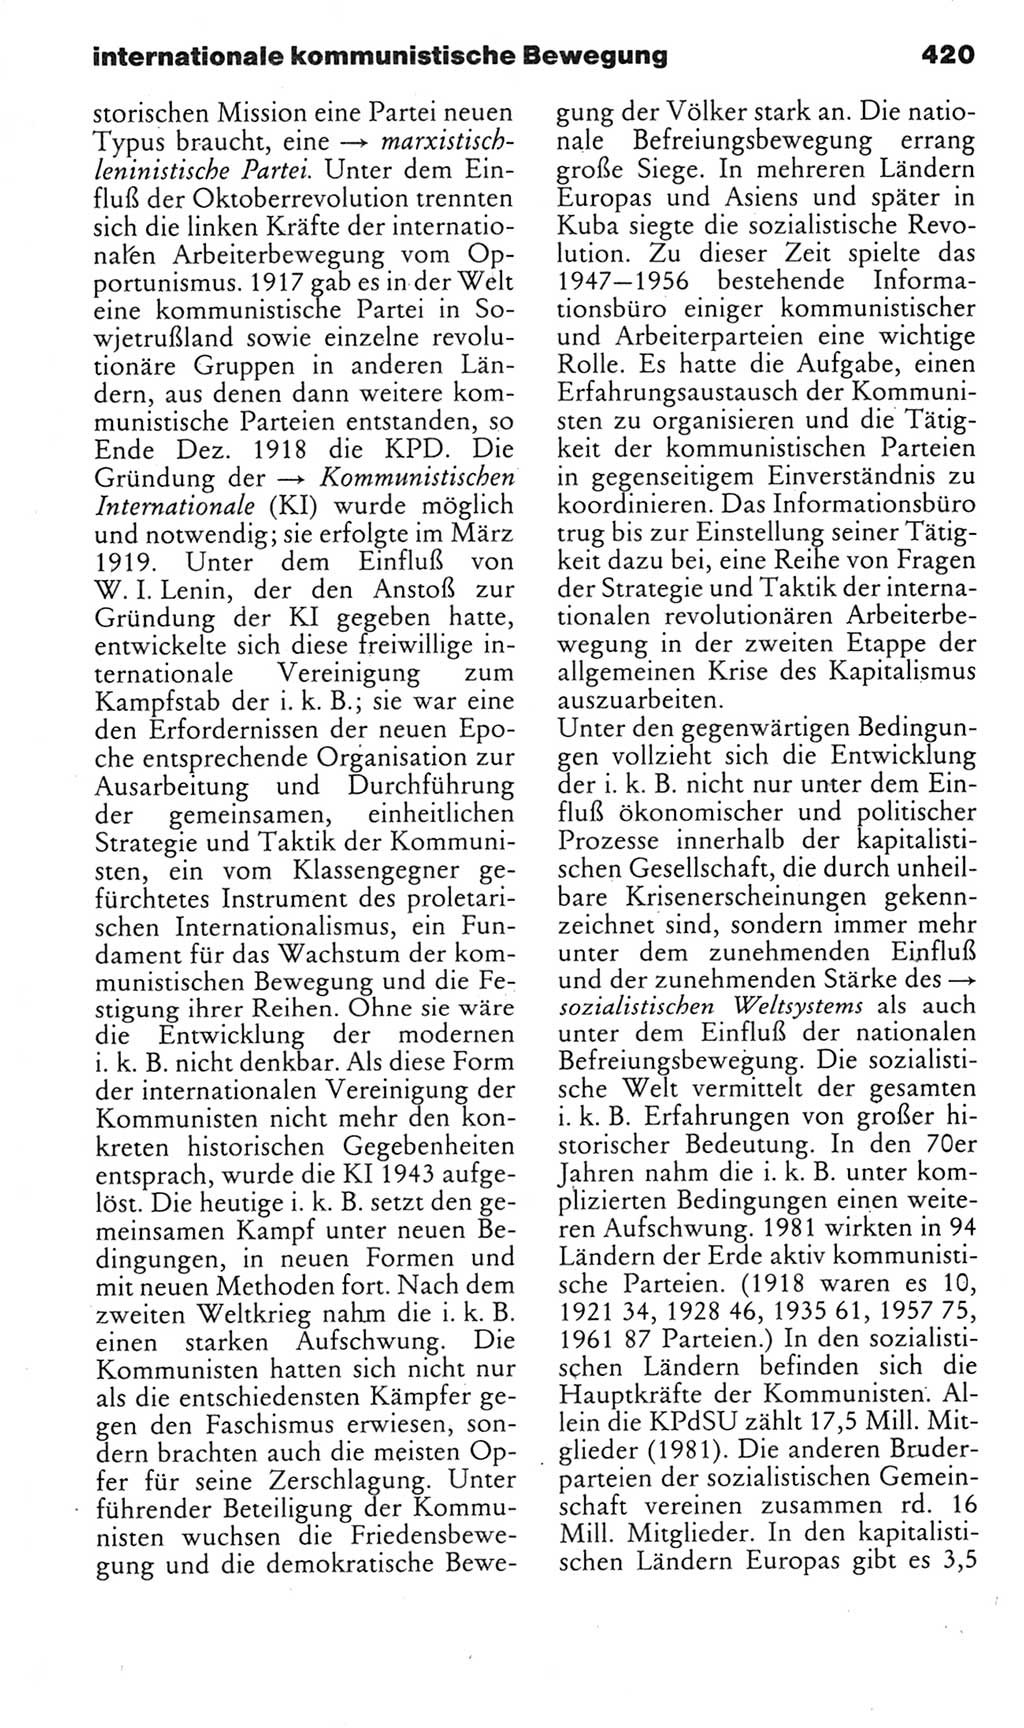 Kleines politisches Wörterbuch [Deutsche Demokratische Republik (DDR)] 1985, Seite 420 (Kl. pol. Wb. DDR 1985, S. 420)